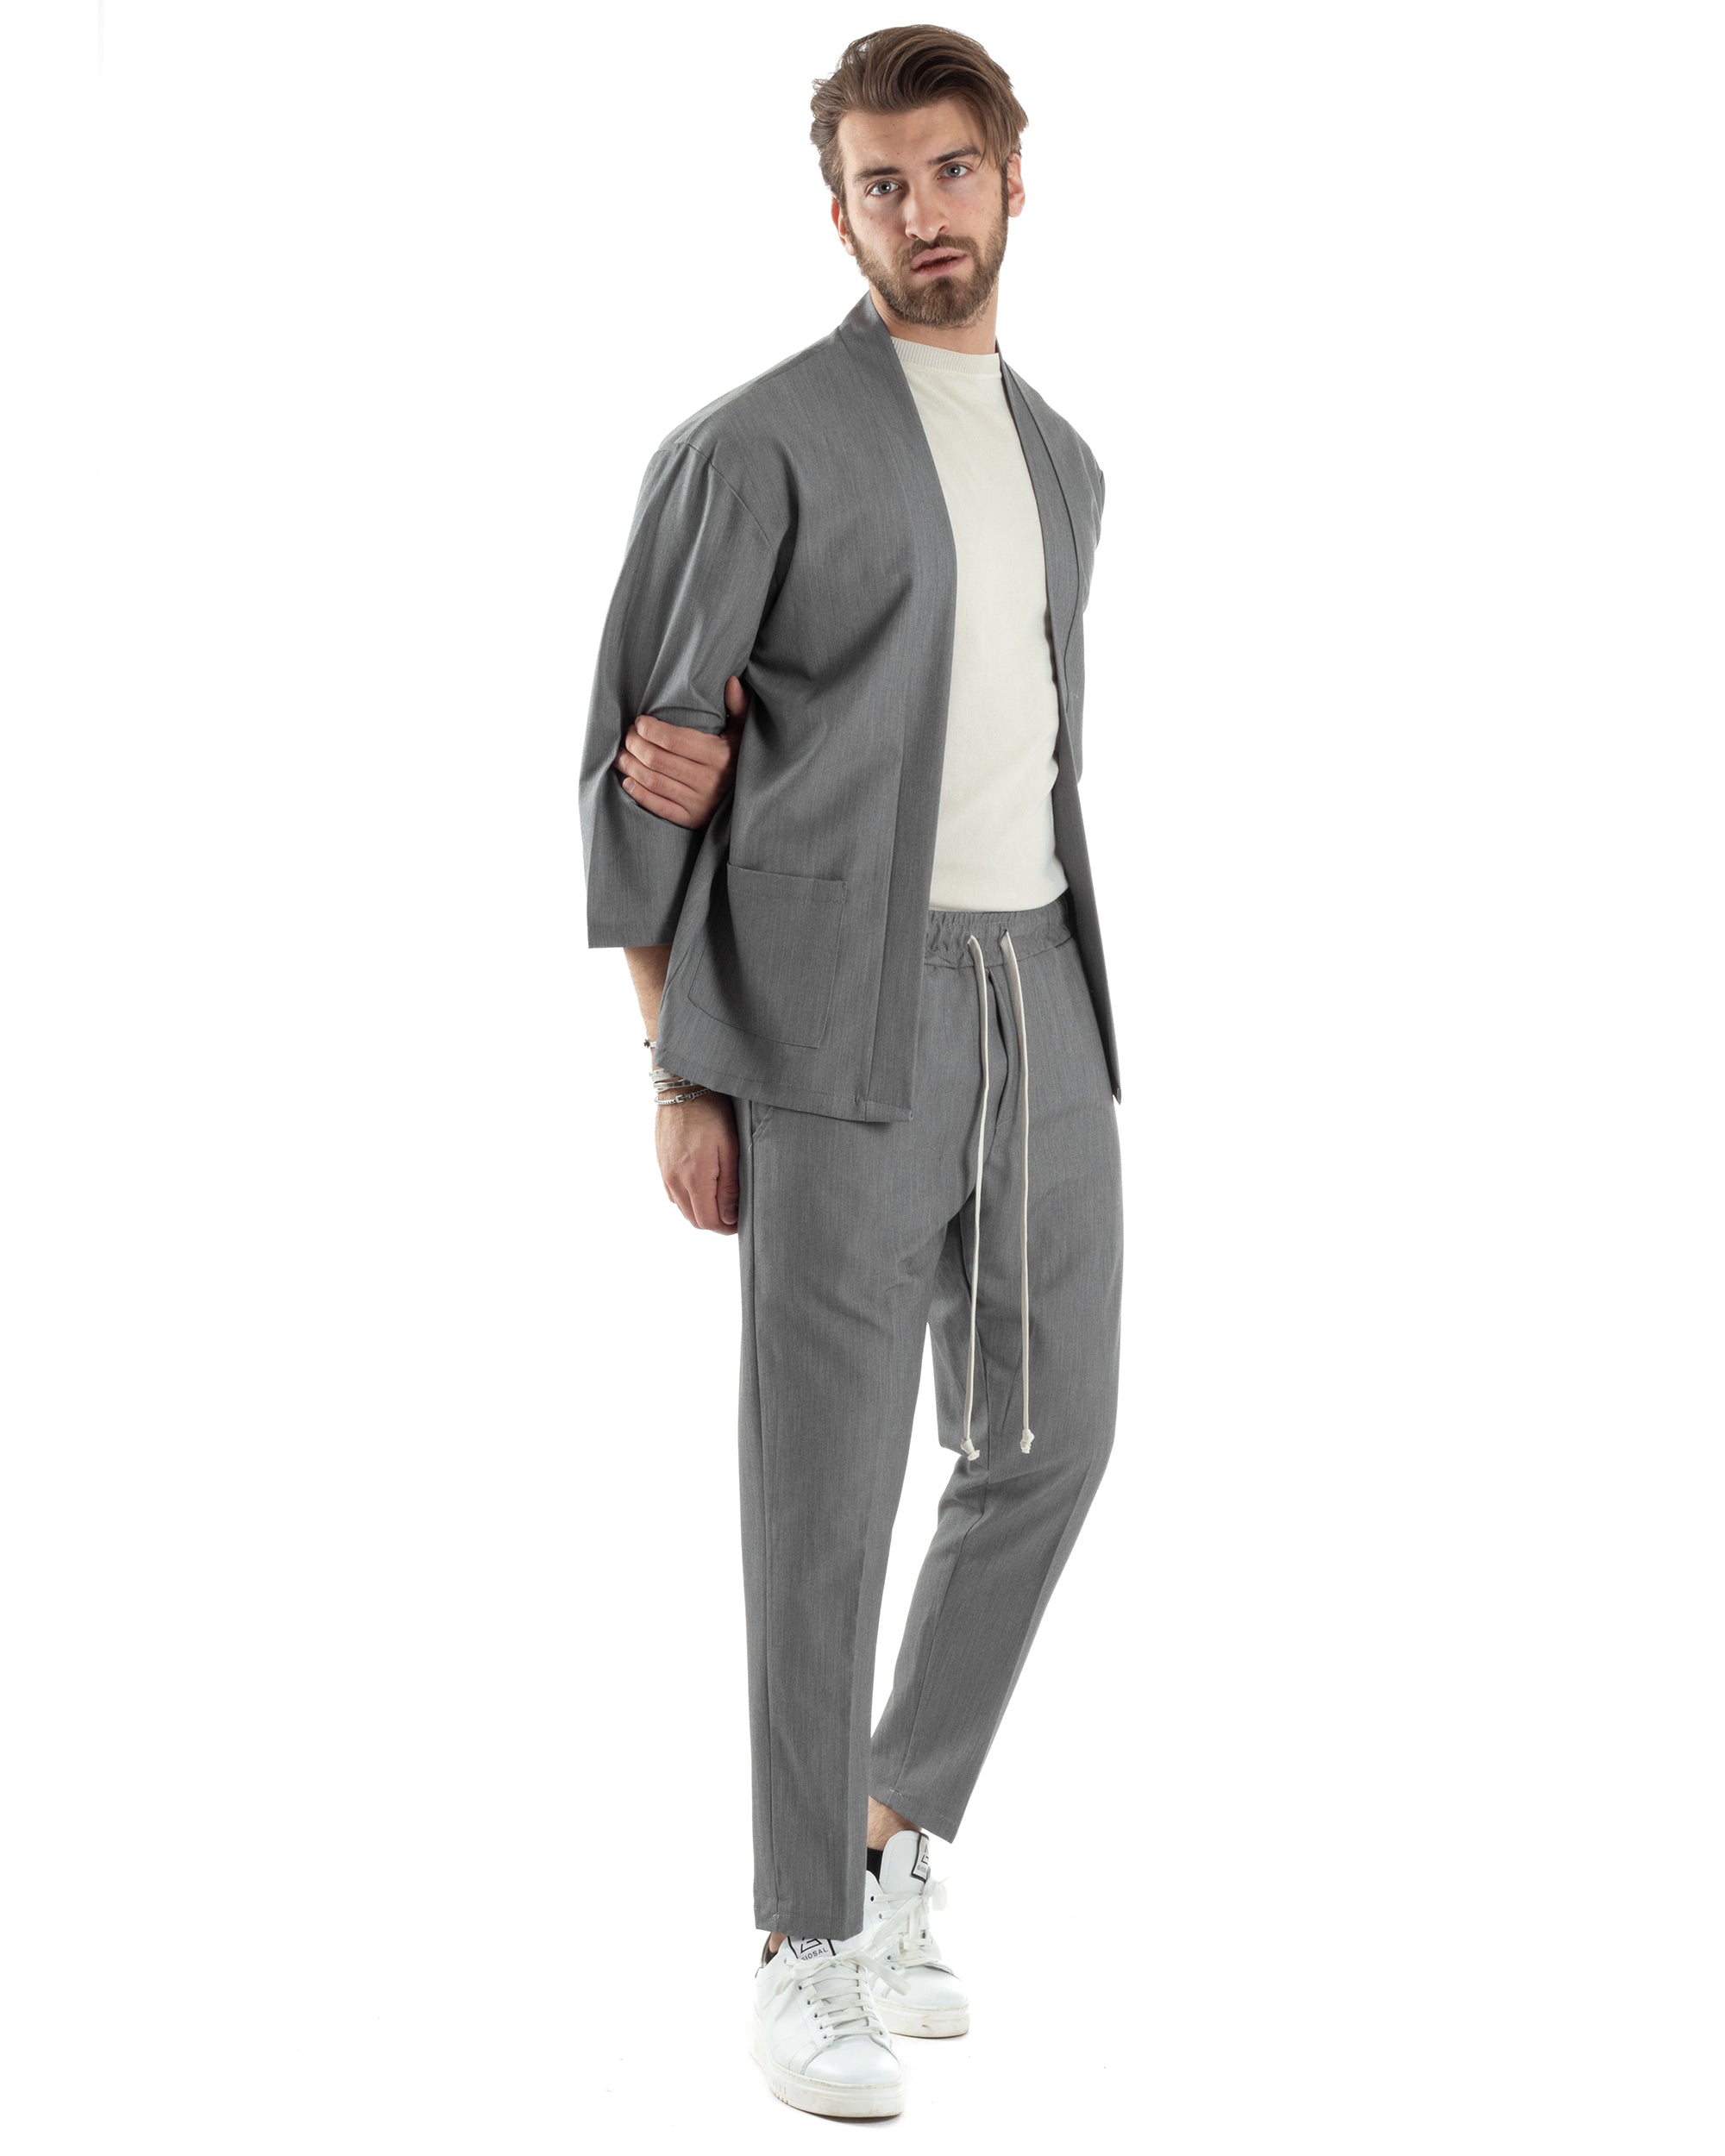 Completo Set Coordinato Uomo Viscosa Giacca Kimono Pantaloni Grigio Casual Elegante GIOSAL-OU2447A